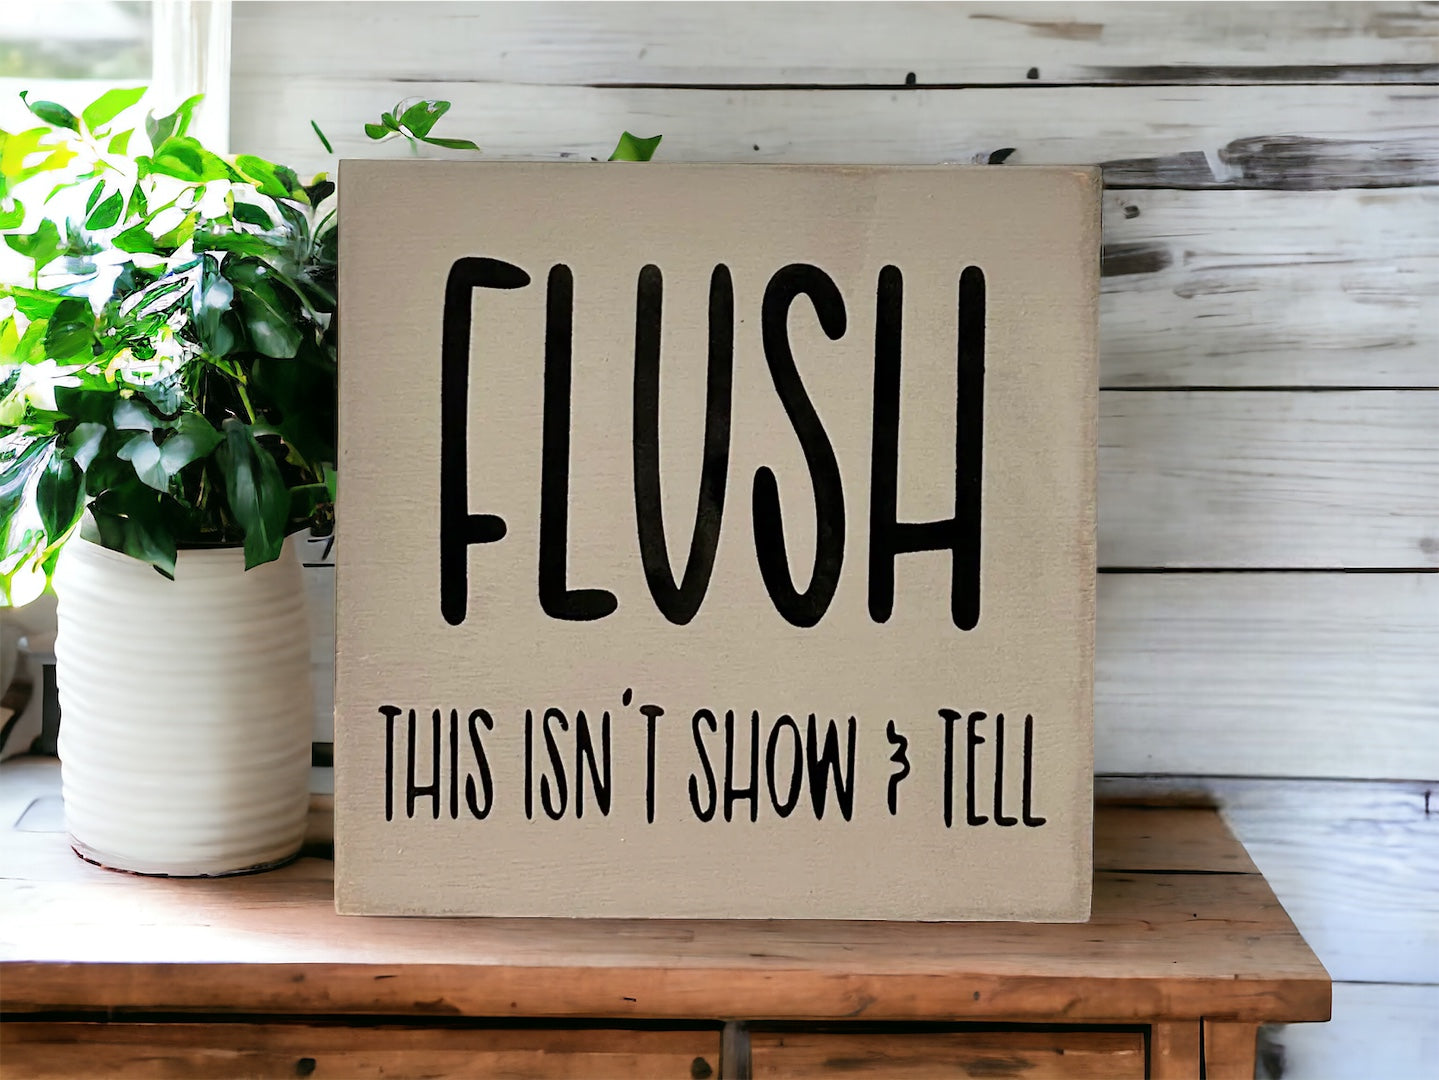 Flush - Funny Bathroom Rustic Shelf Sitter